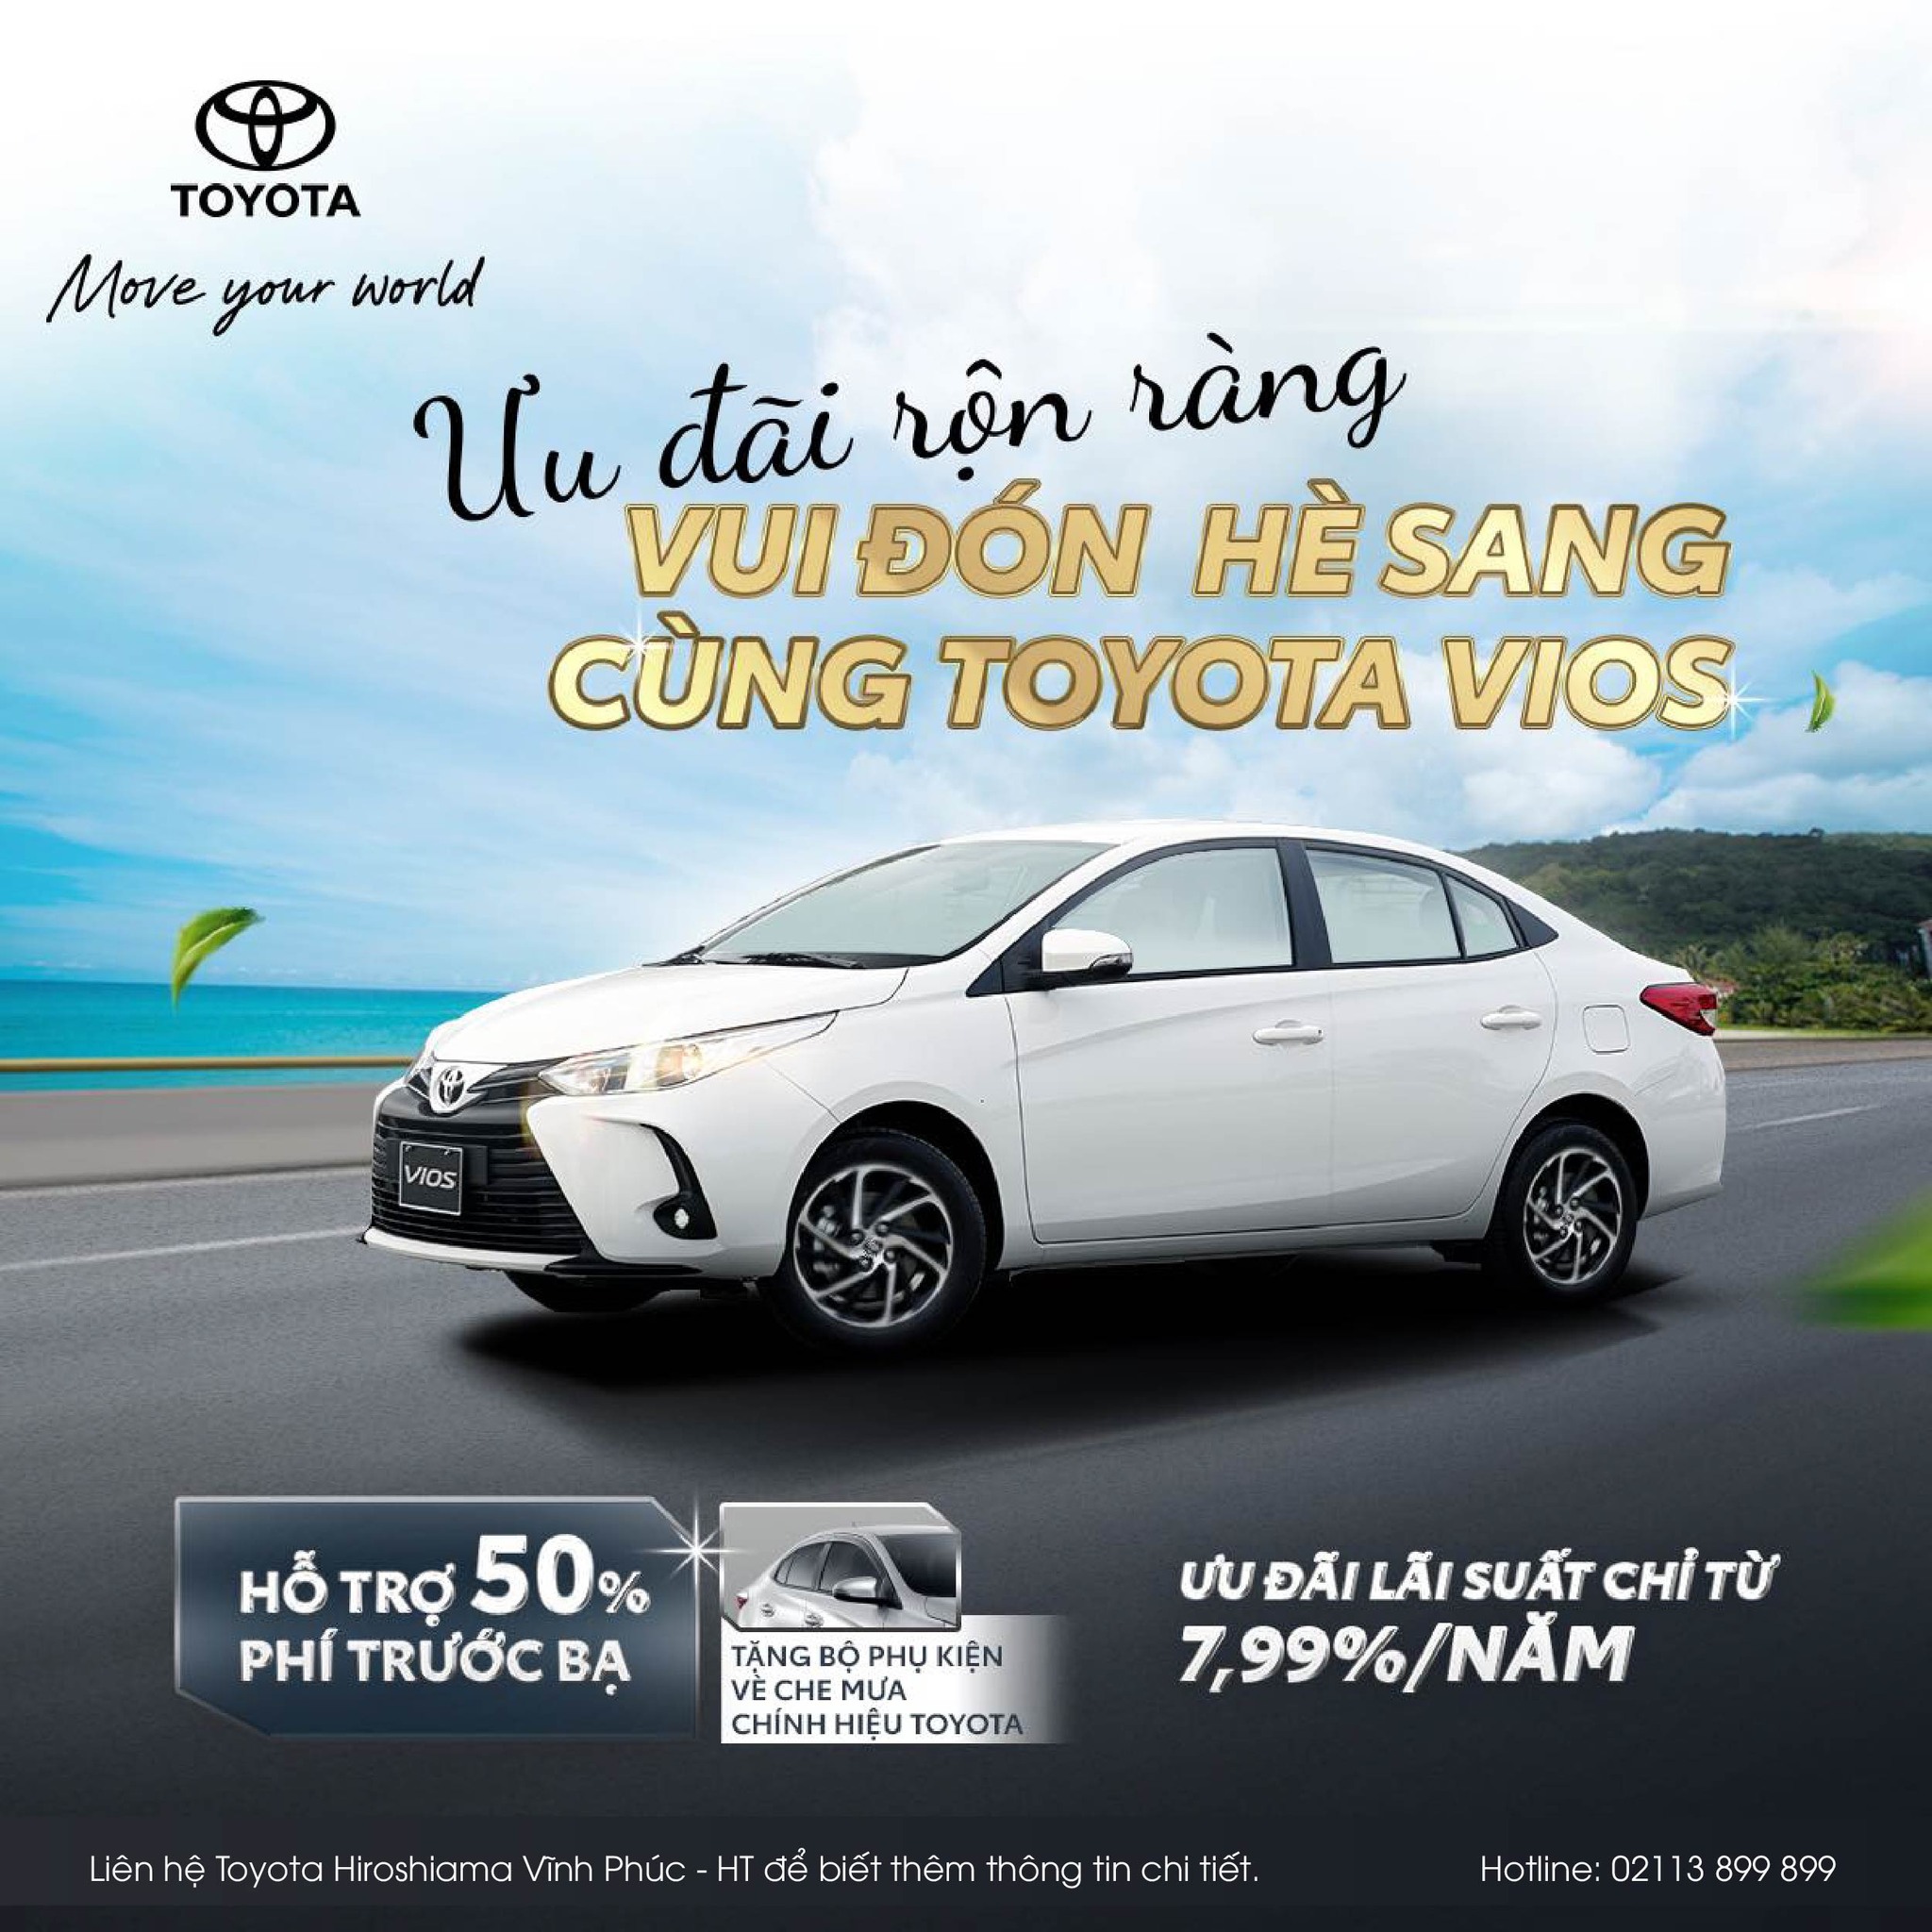 HỖ TRỢ 50% LỆ PHÍ TRƯỚC BẠ Toyota Vios